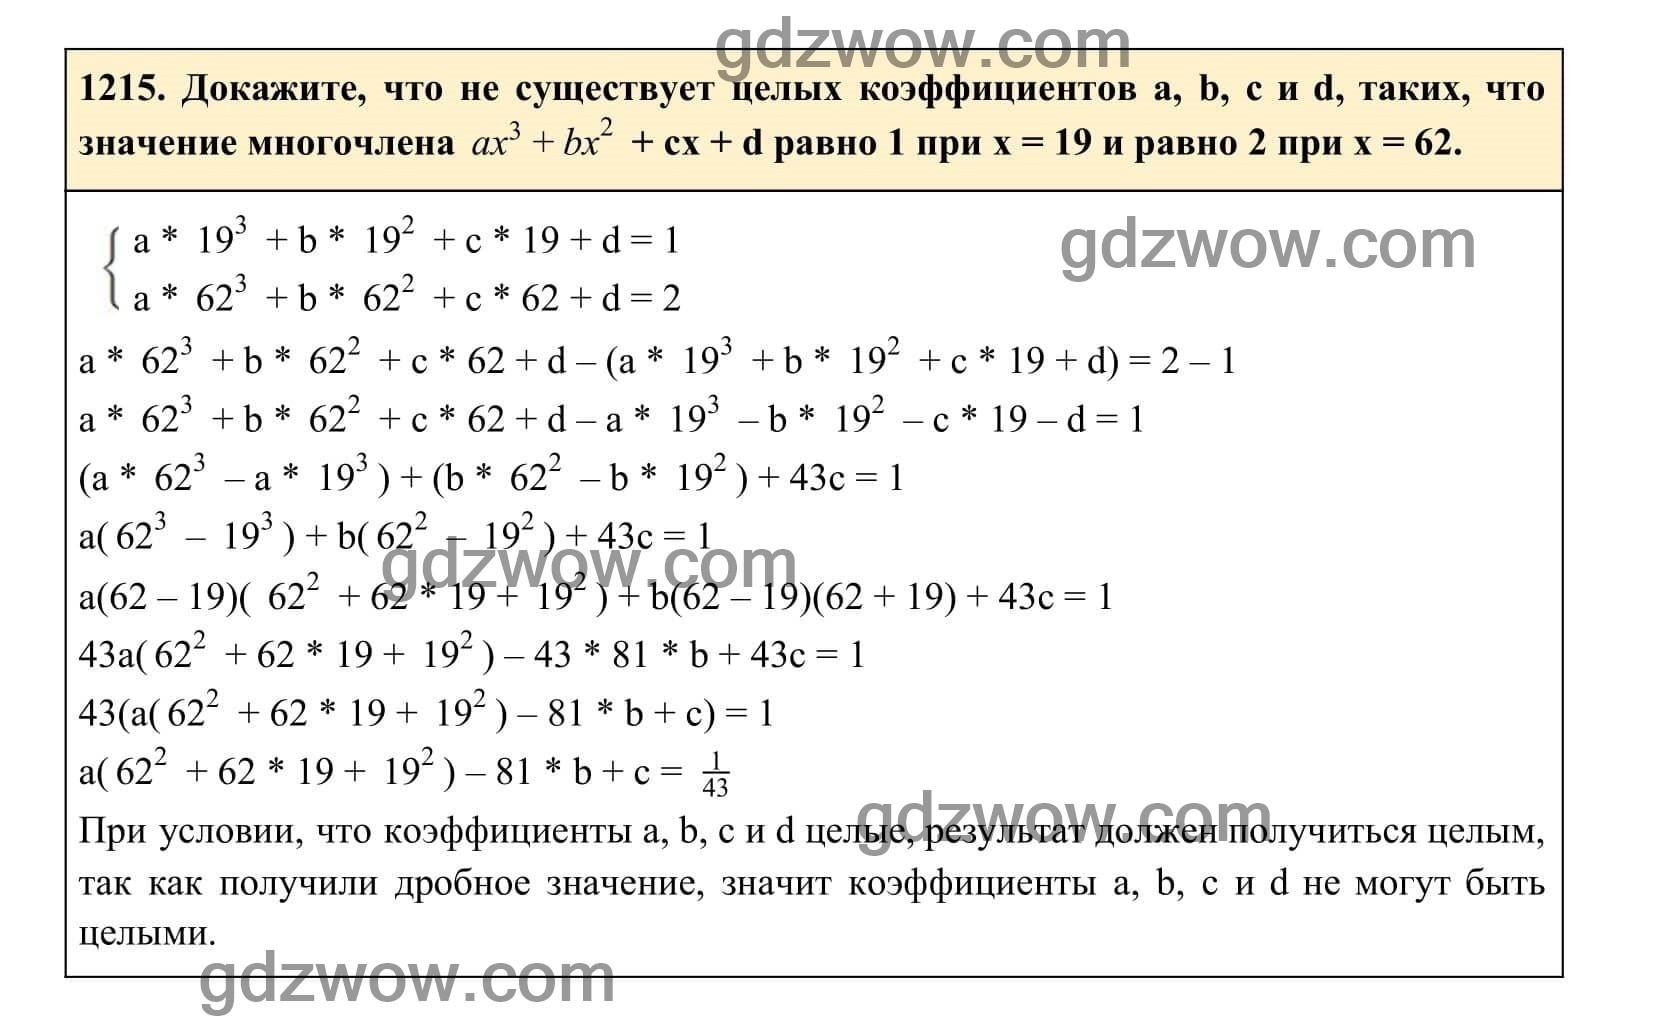 Упражнение 1215 - ГДЗ по Алгебре 7 класс Учебник Макарычев (решебник) - GDZwow